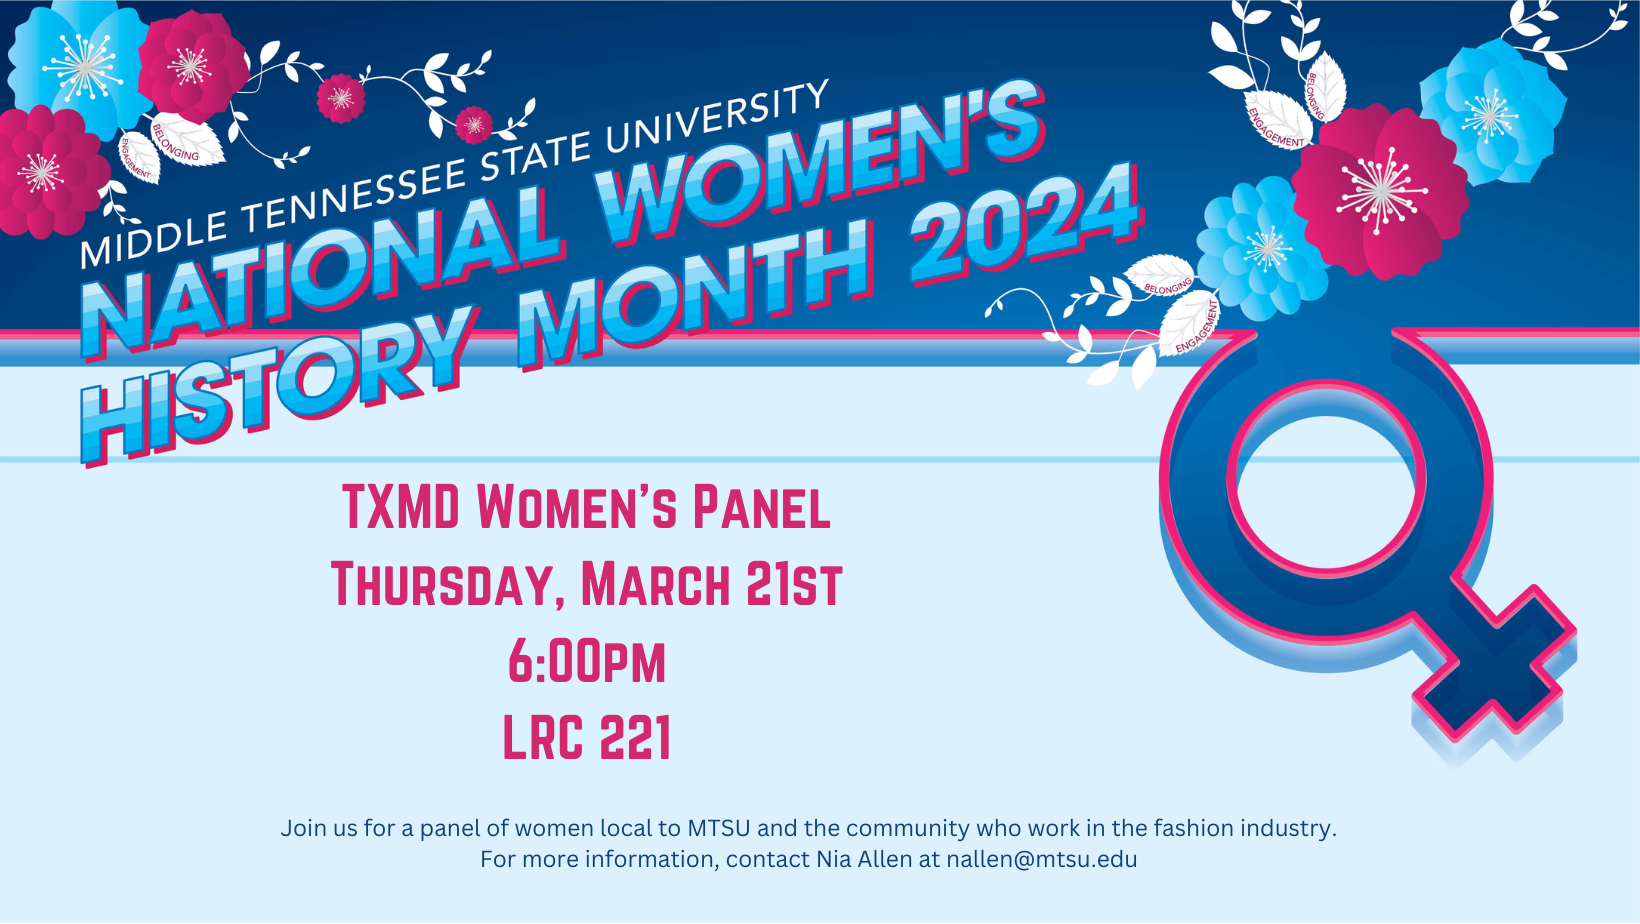 TXMD Women's Panel